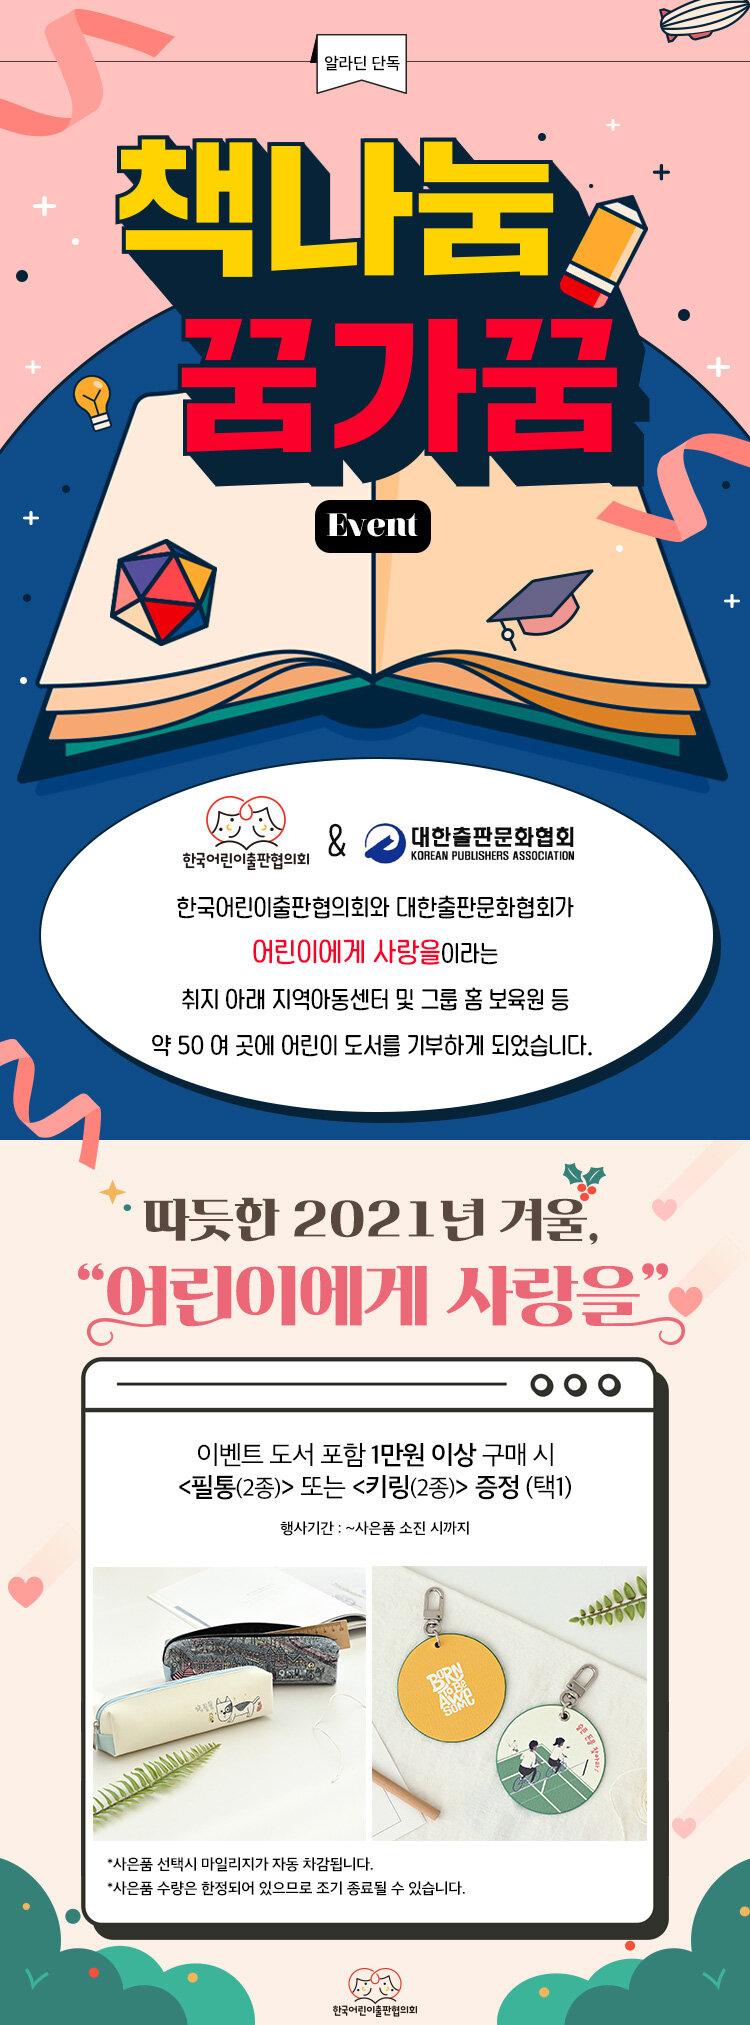 한국어린이출판협의회 X 대한출판문화협회 책나눔 꿈가꿈 이벤트